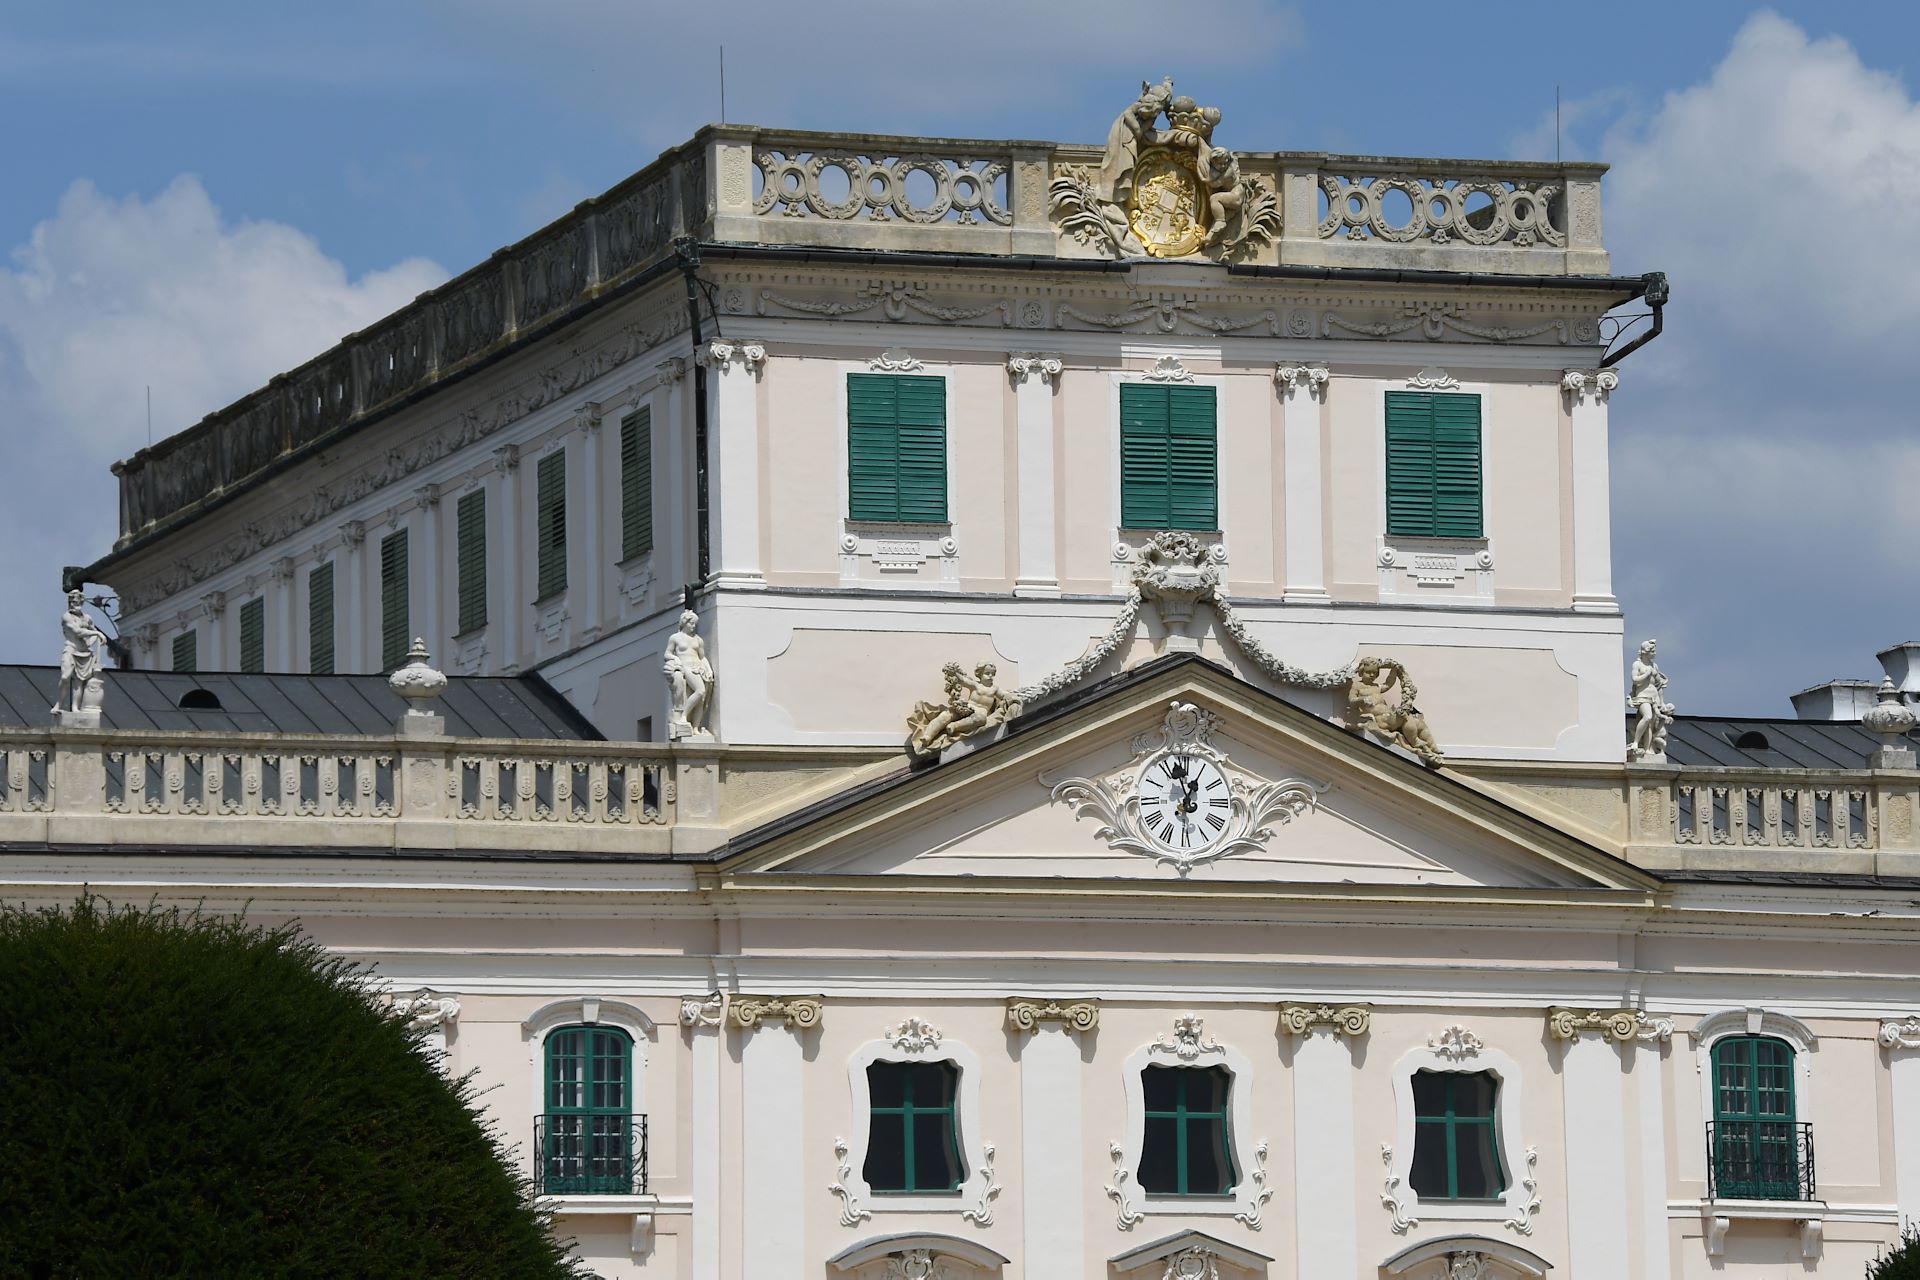 Schloss Fertőd